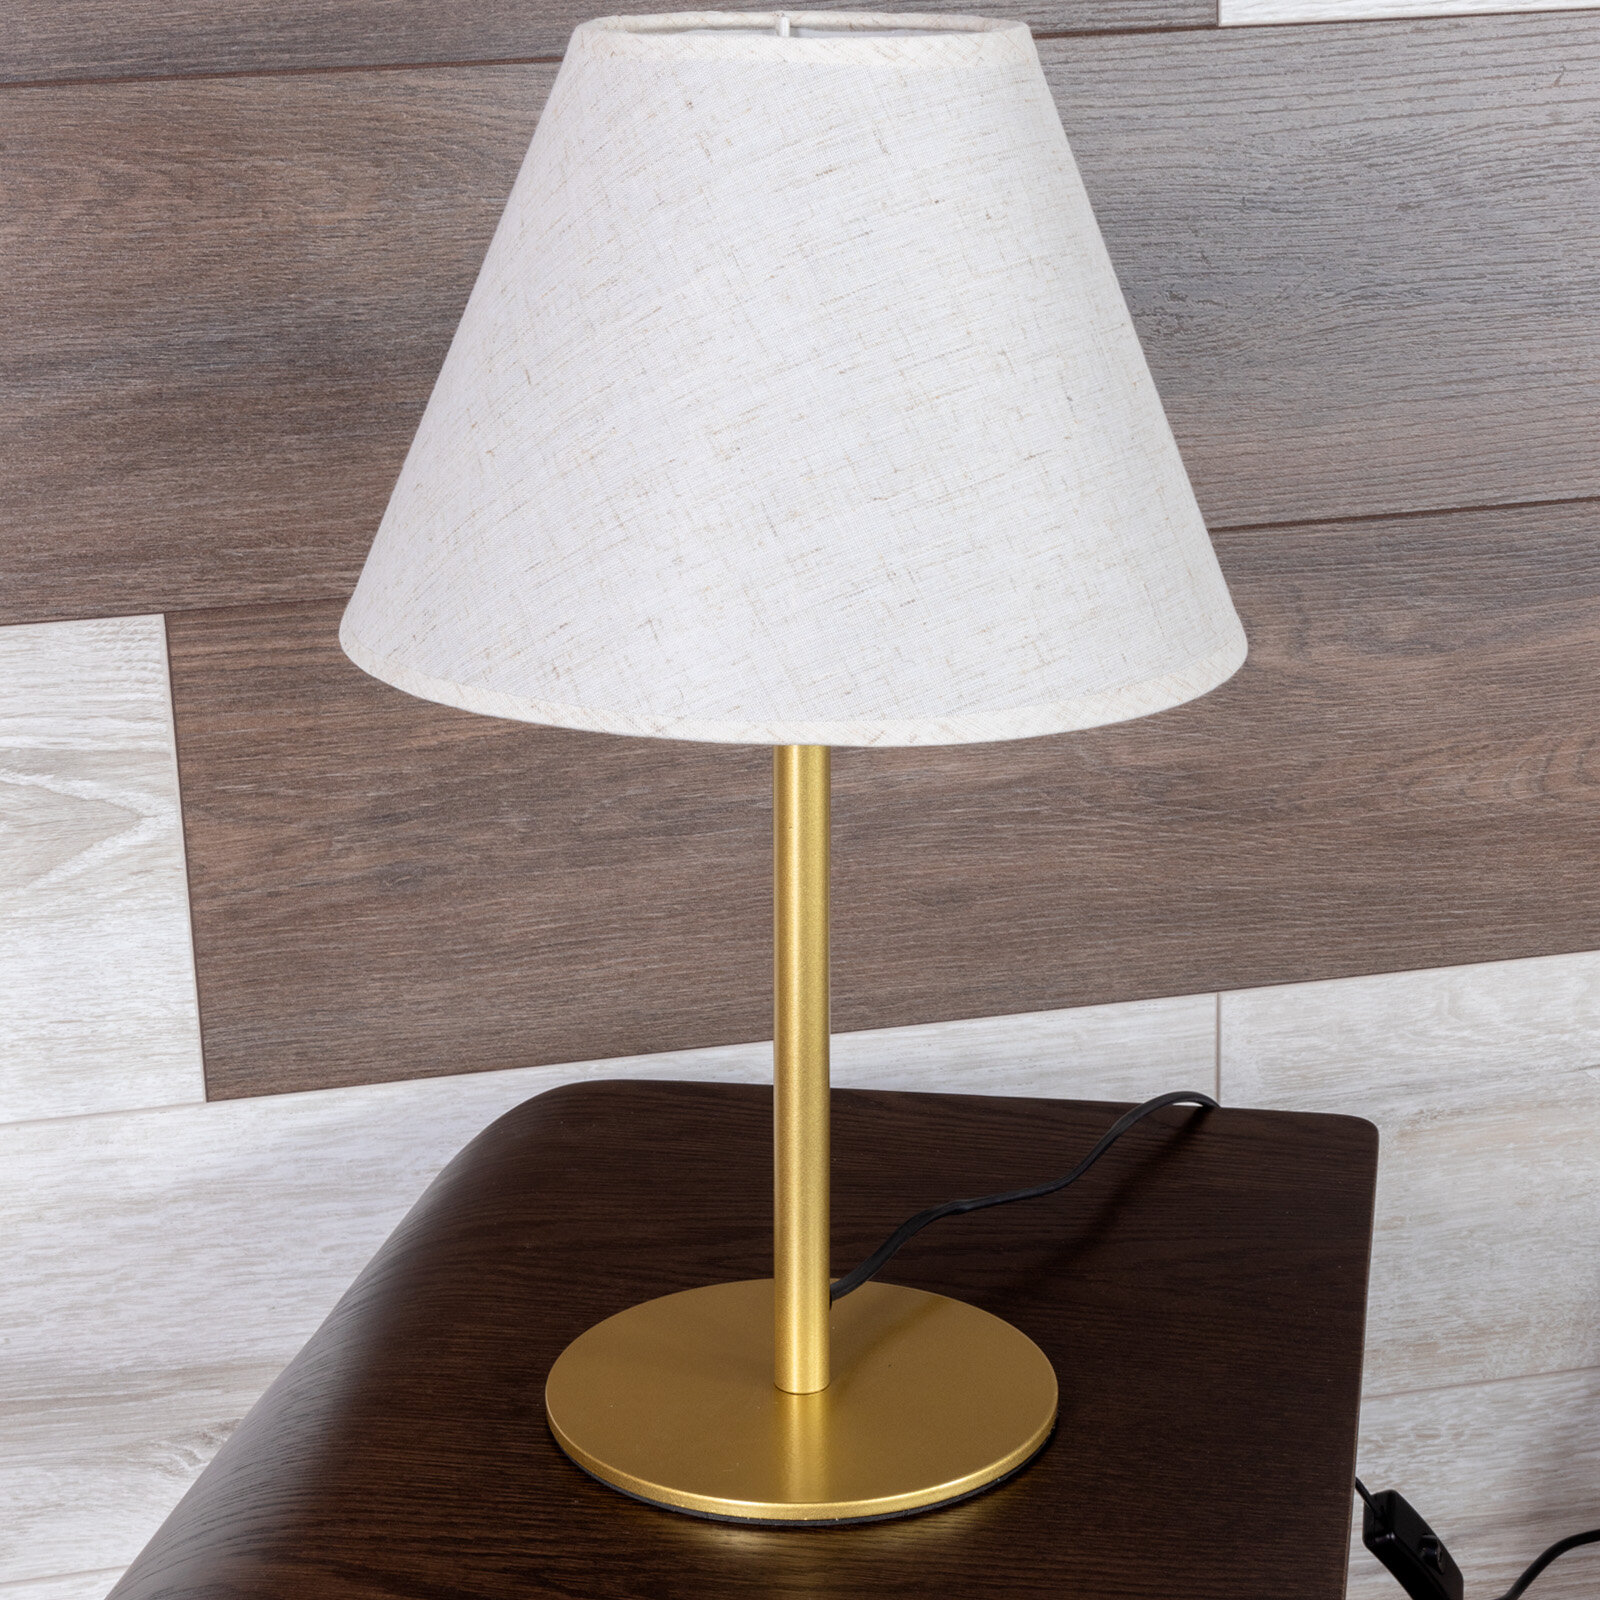 Настольная лампа светильник настольный с абажуром арт. MA-40134-G+N Цвет золото абажур натурал.